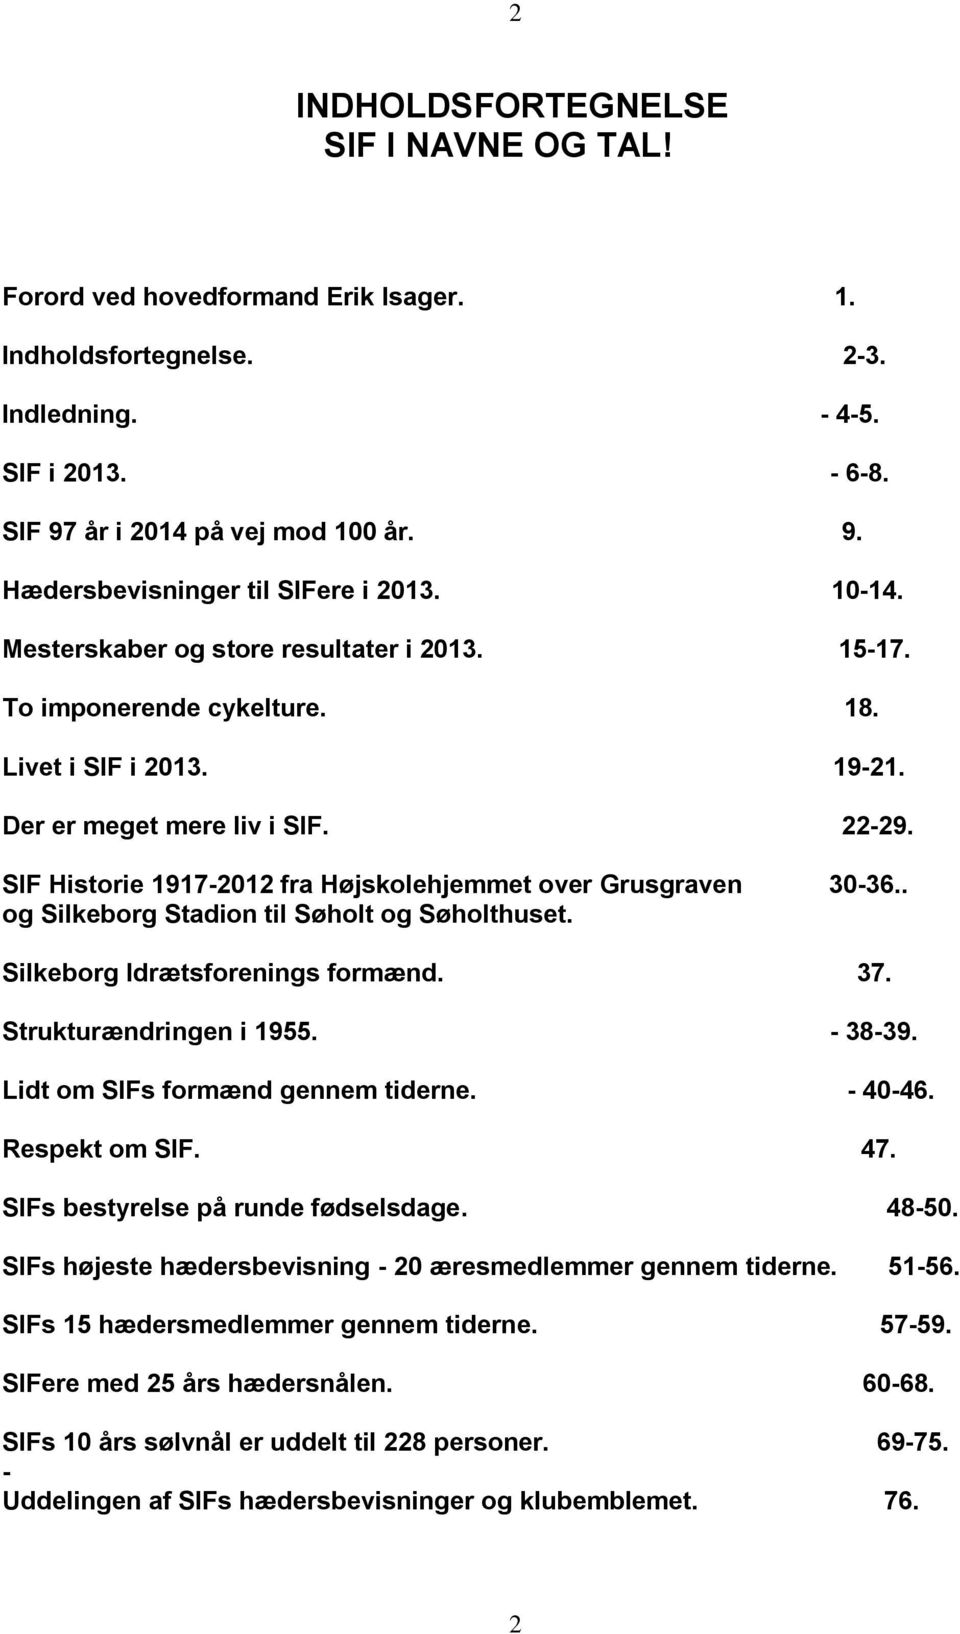 SIF Historie 1917-2012 fra Højskolehjemmet over Grusgraven 30-36.. og Silkeborg Stadion til Søholt og Søholthuset. Silkeborg Idrætsforenings formænd. 37. Strukturændringen i 1955. - 38-39.